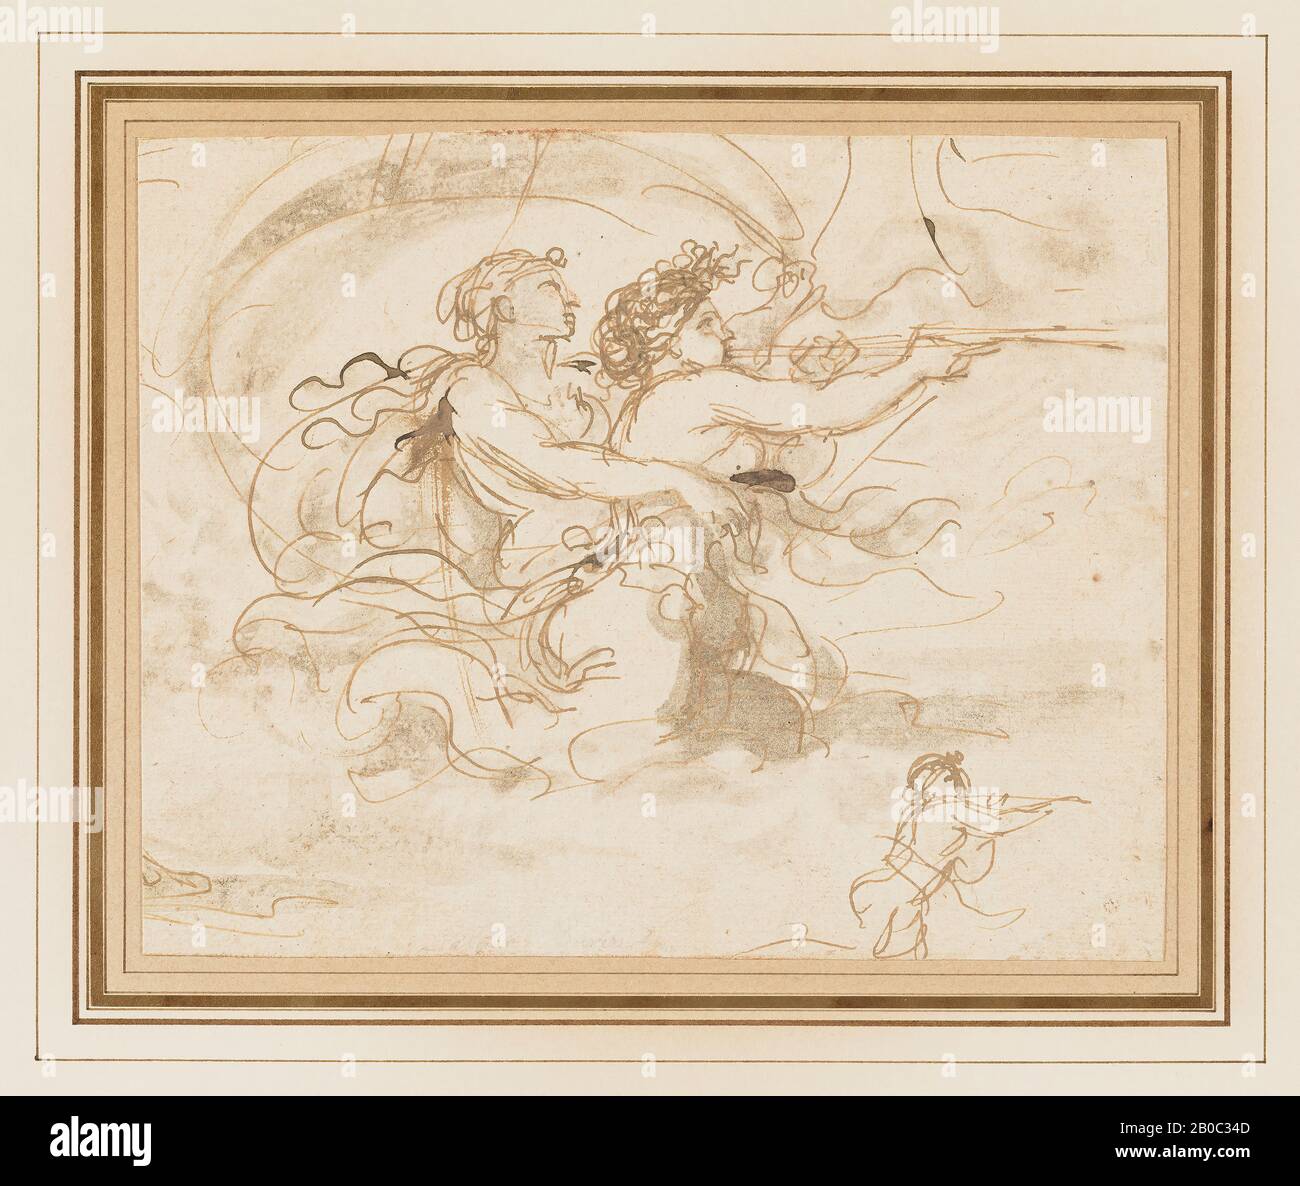 Benedetto Gennari der Jüngere, Triton und Nereid mit Trompete, 1633-1715, Stift und braune Tinte und waschen auf Papier, 6 9/16 Zoll x 8 3/16 Zoll. (16,67 cm x 20,8 cm) Stockfoto